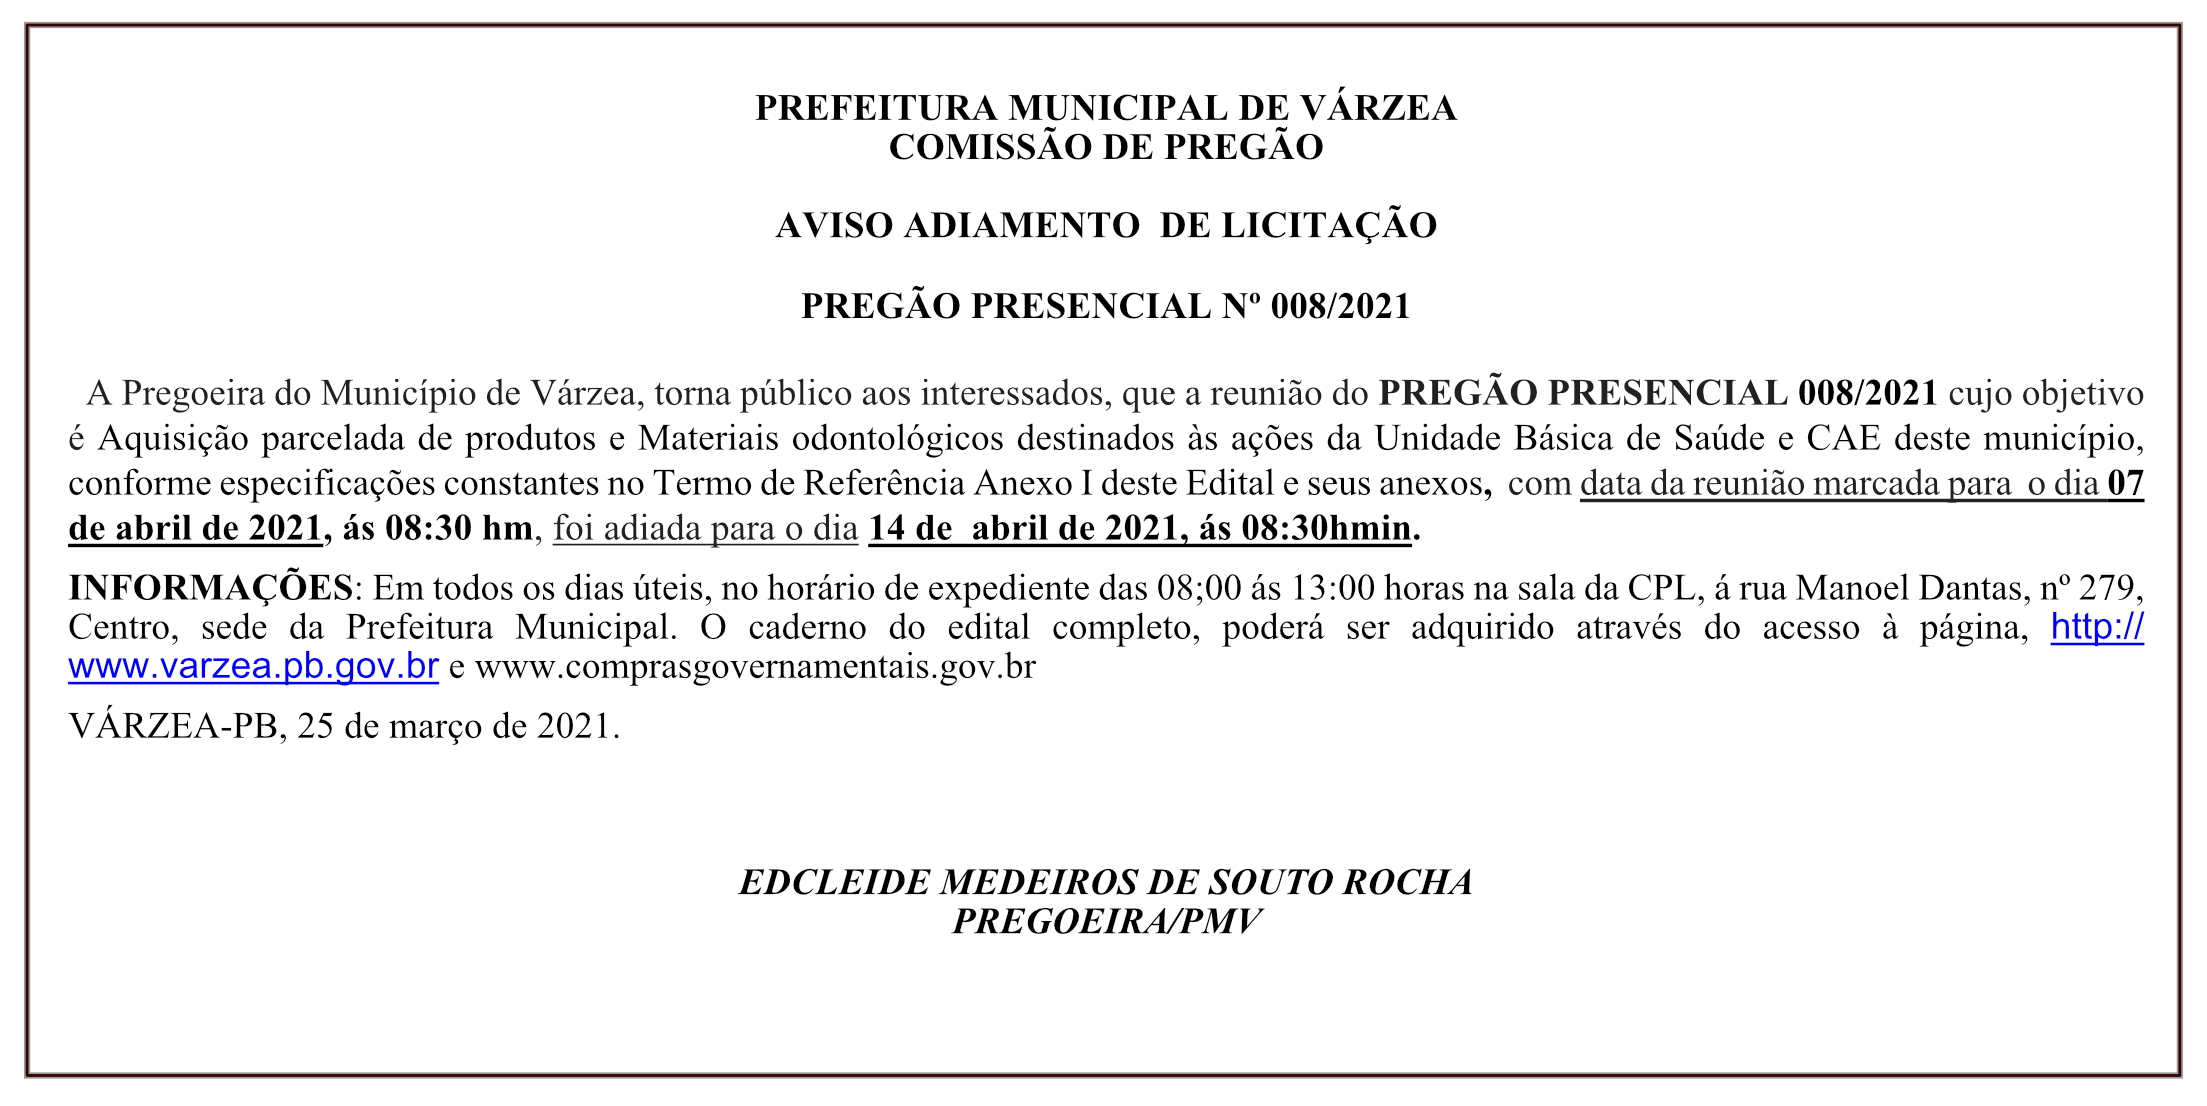 PREFEITURA MUNICIPAL DE VÁRZEA – AVISO ADIAMENTO  DE LICITAÇÃO – PREGÃO PRESENCIAL Nº 008/2021